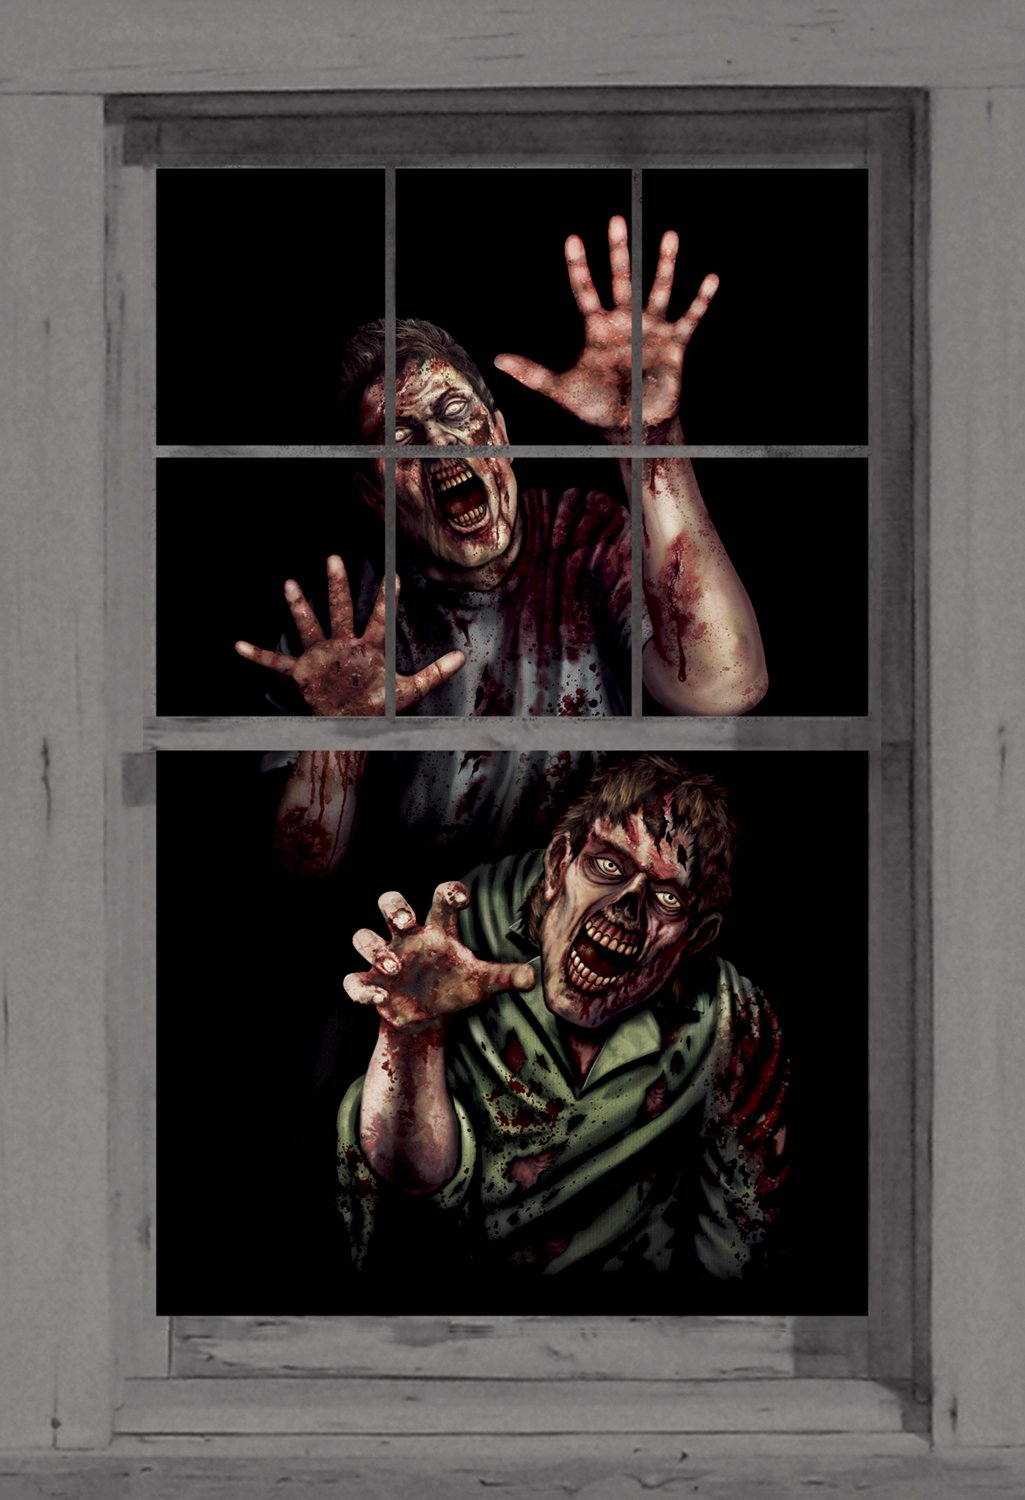 Zombie Breakout Window Poster